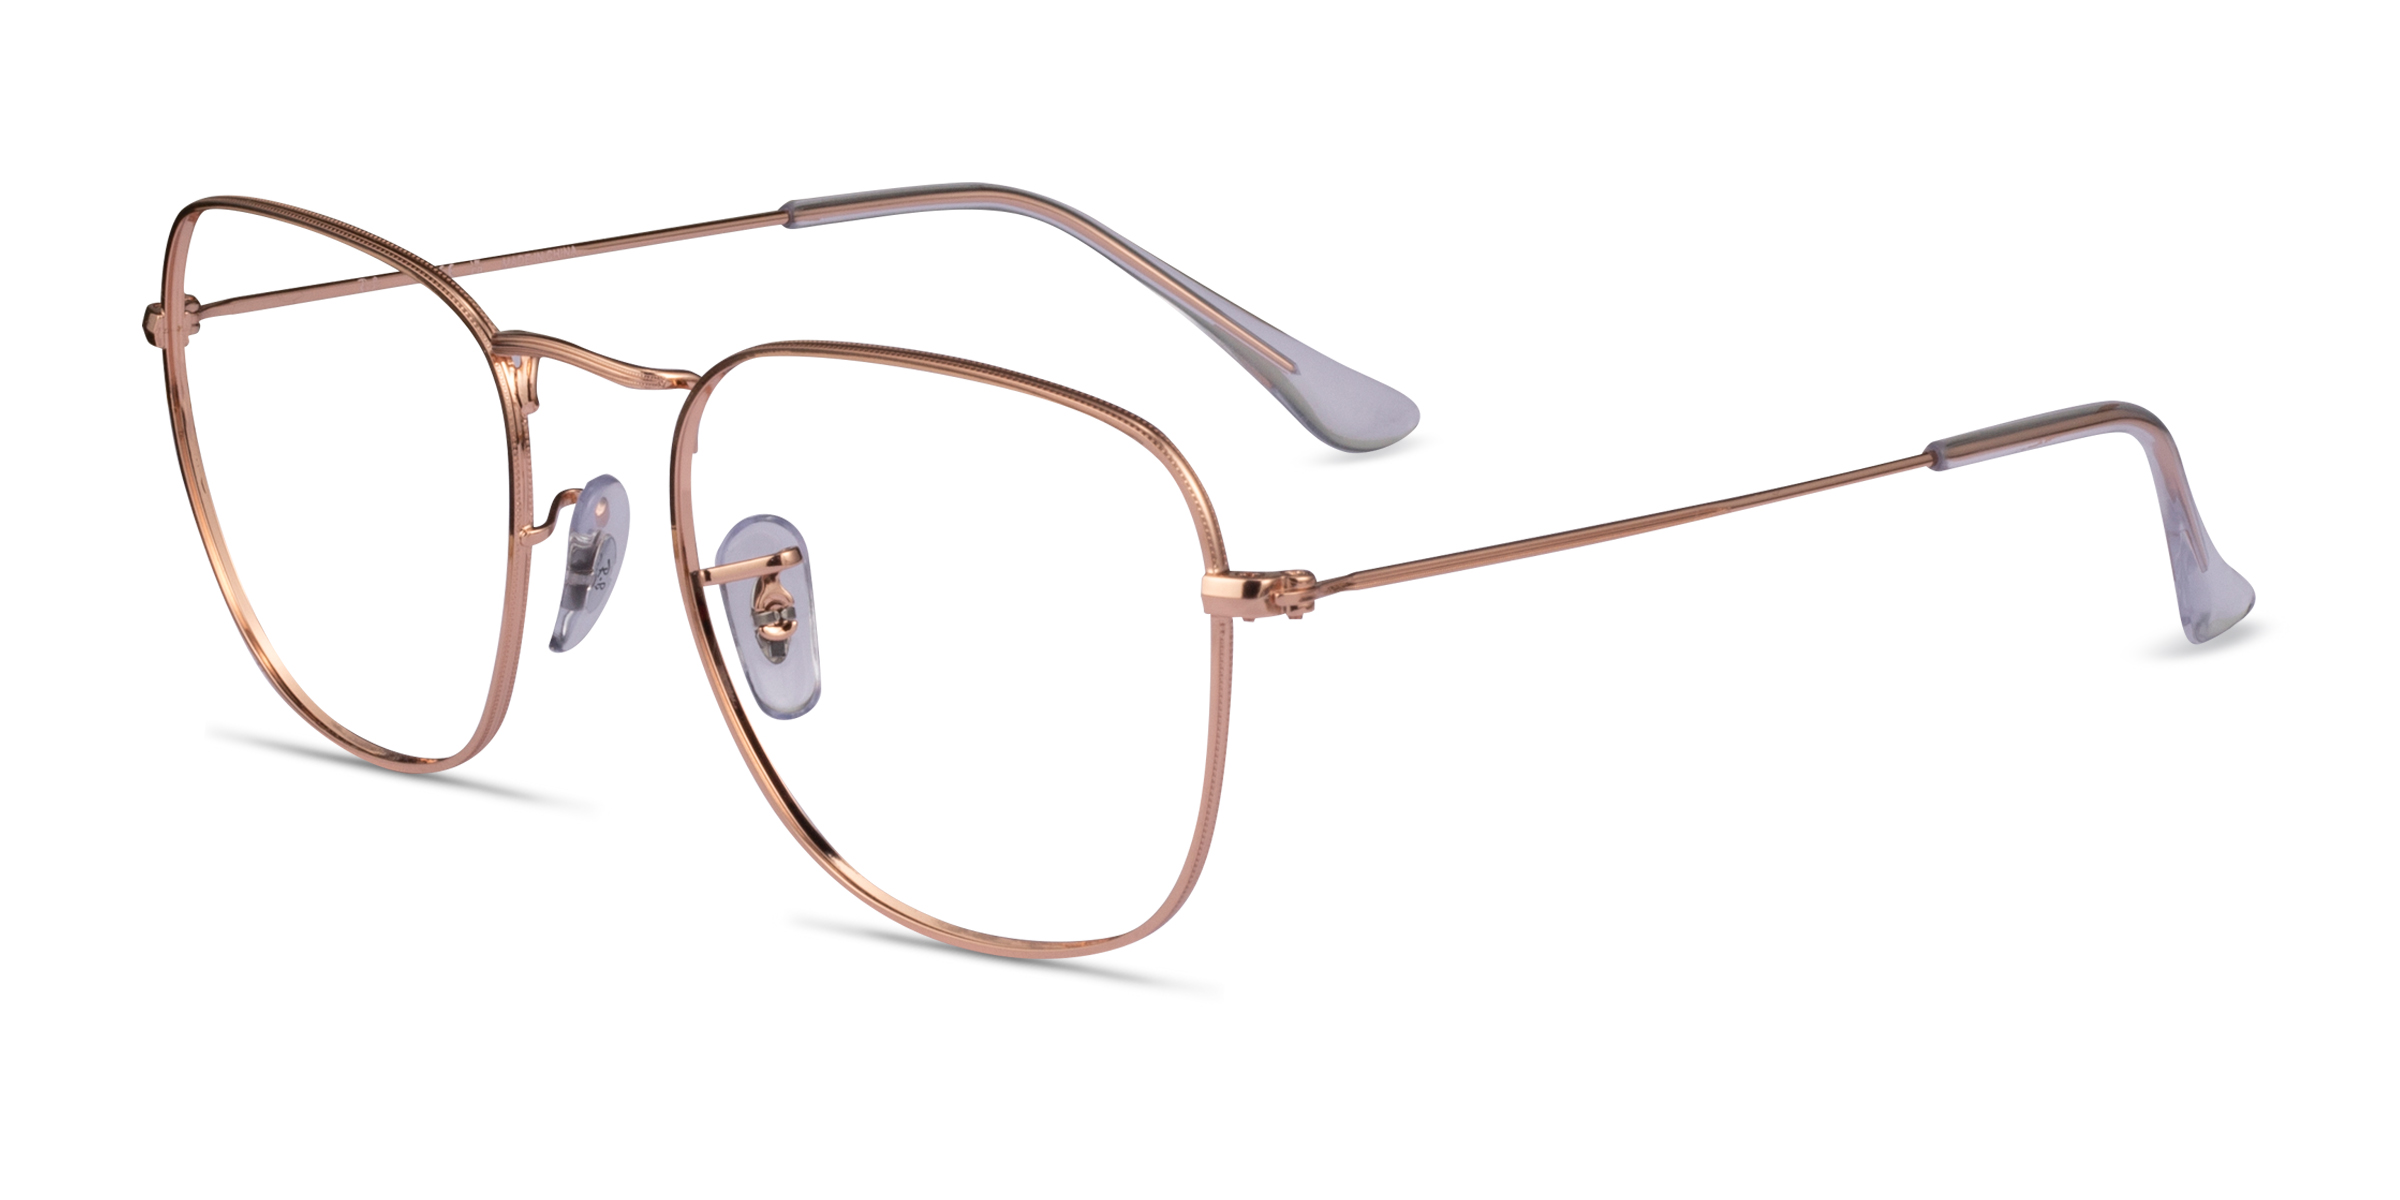 Ray-Ban RB3857V Frank - Square Rose Gold Frame Eyeglasses ...